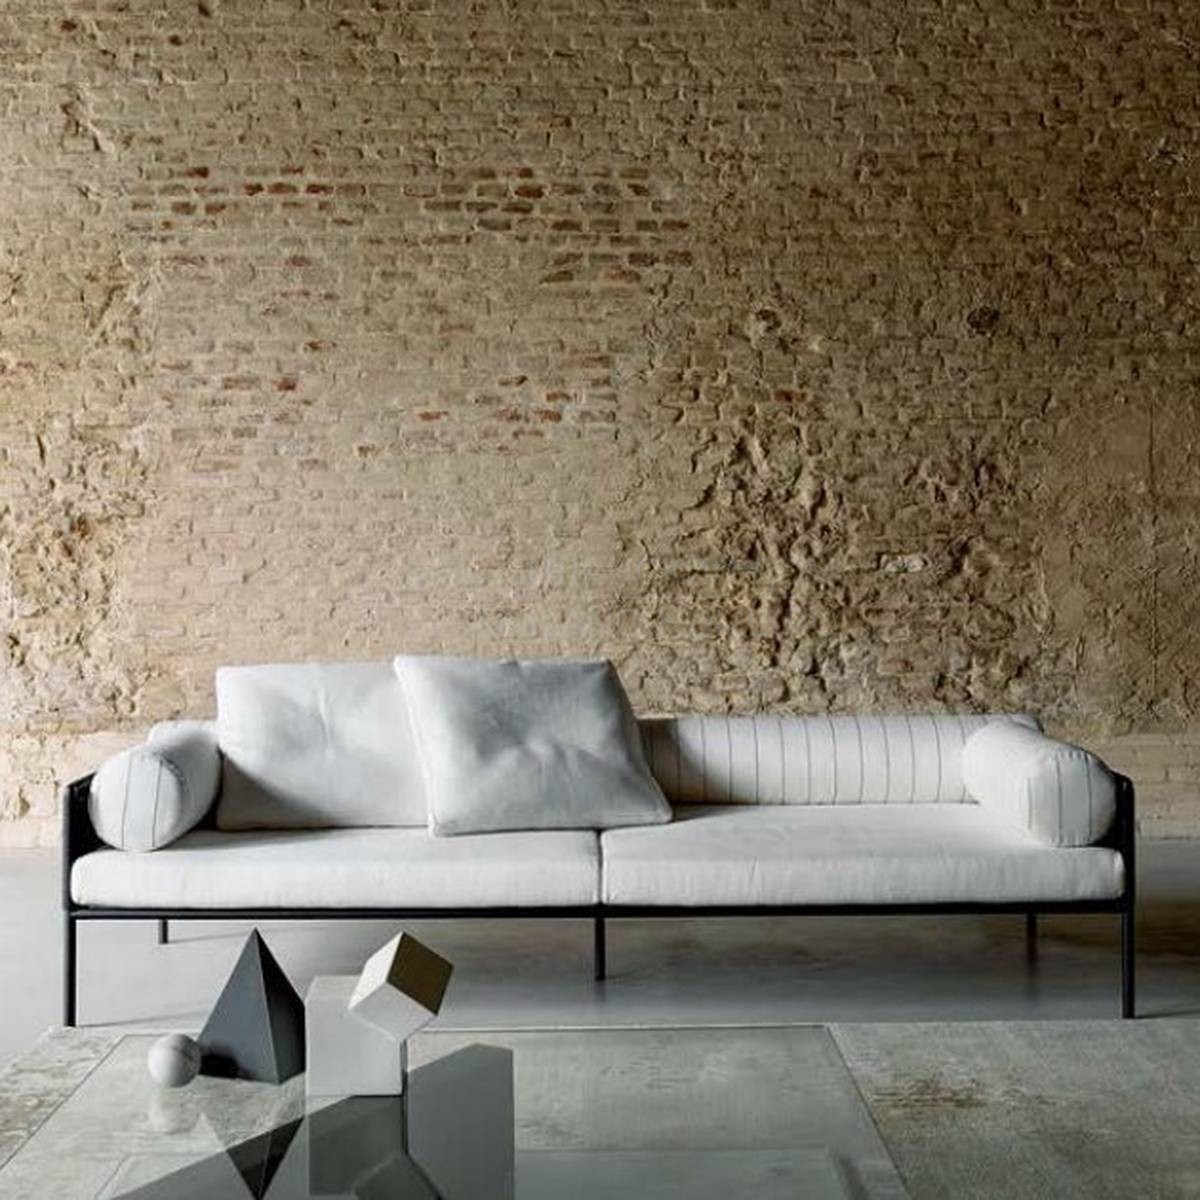 Прямой диван Agra sofa из Италии фабрики LIVING DIVANI